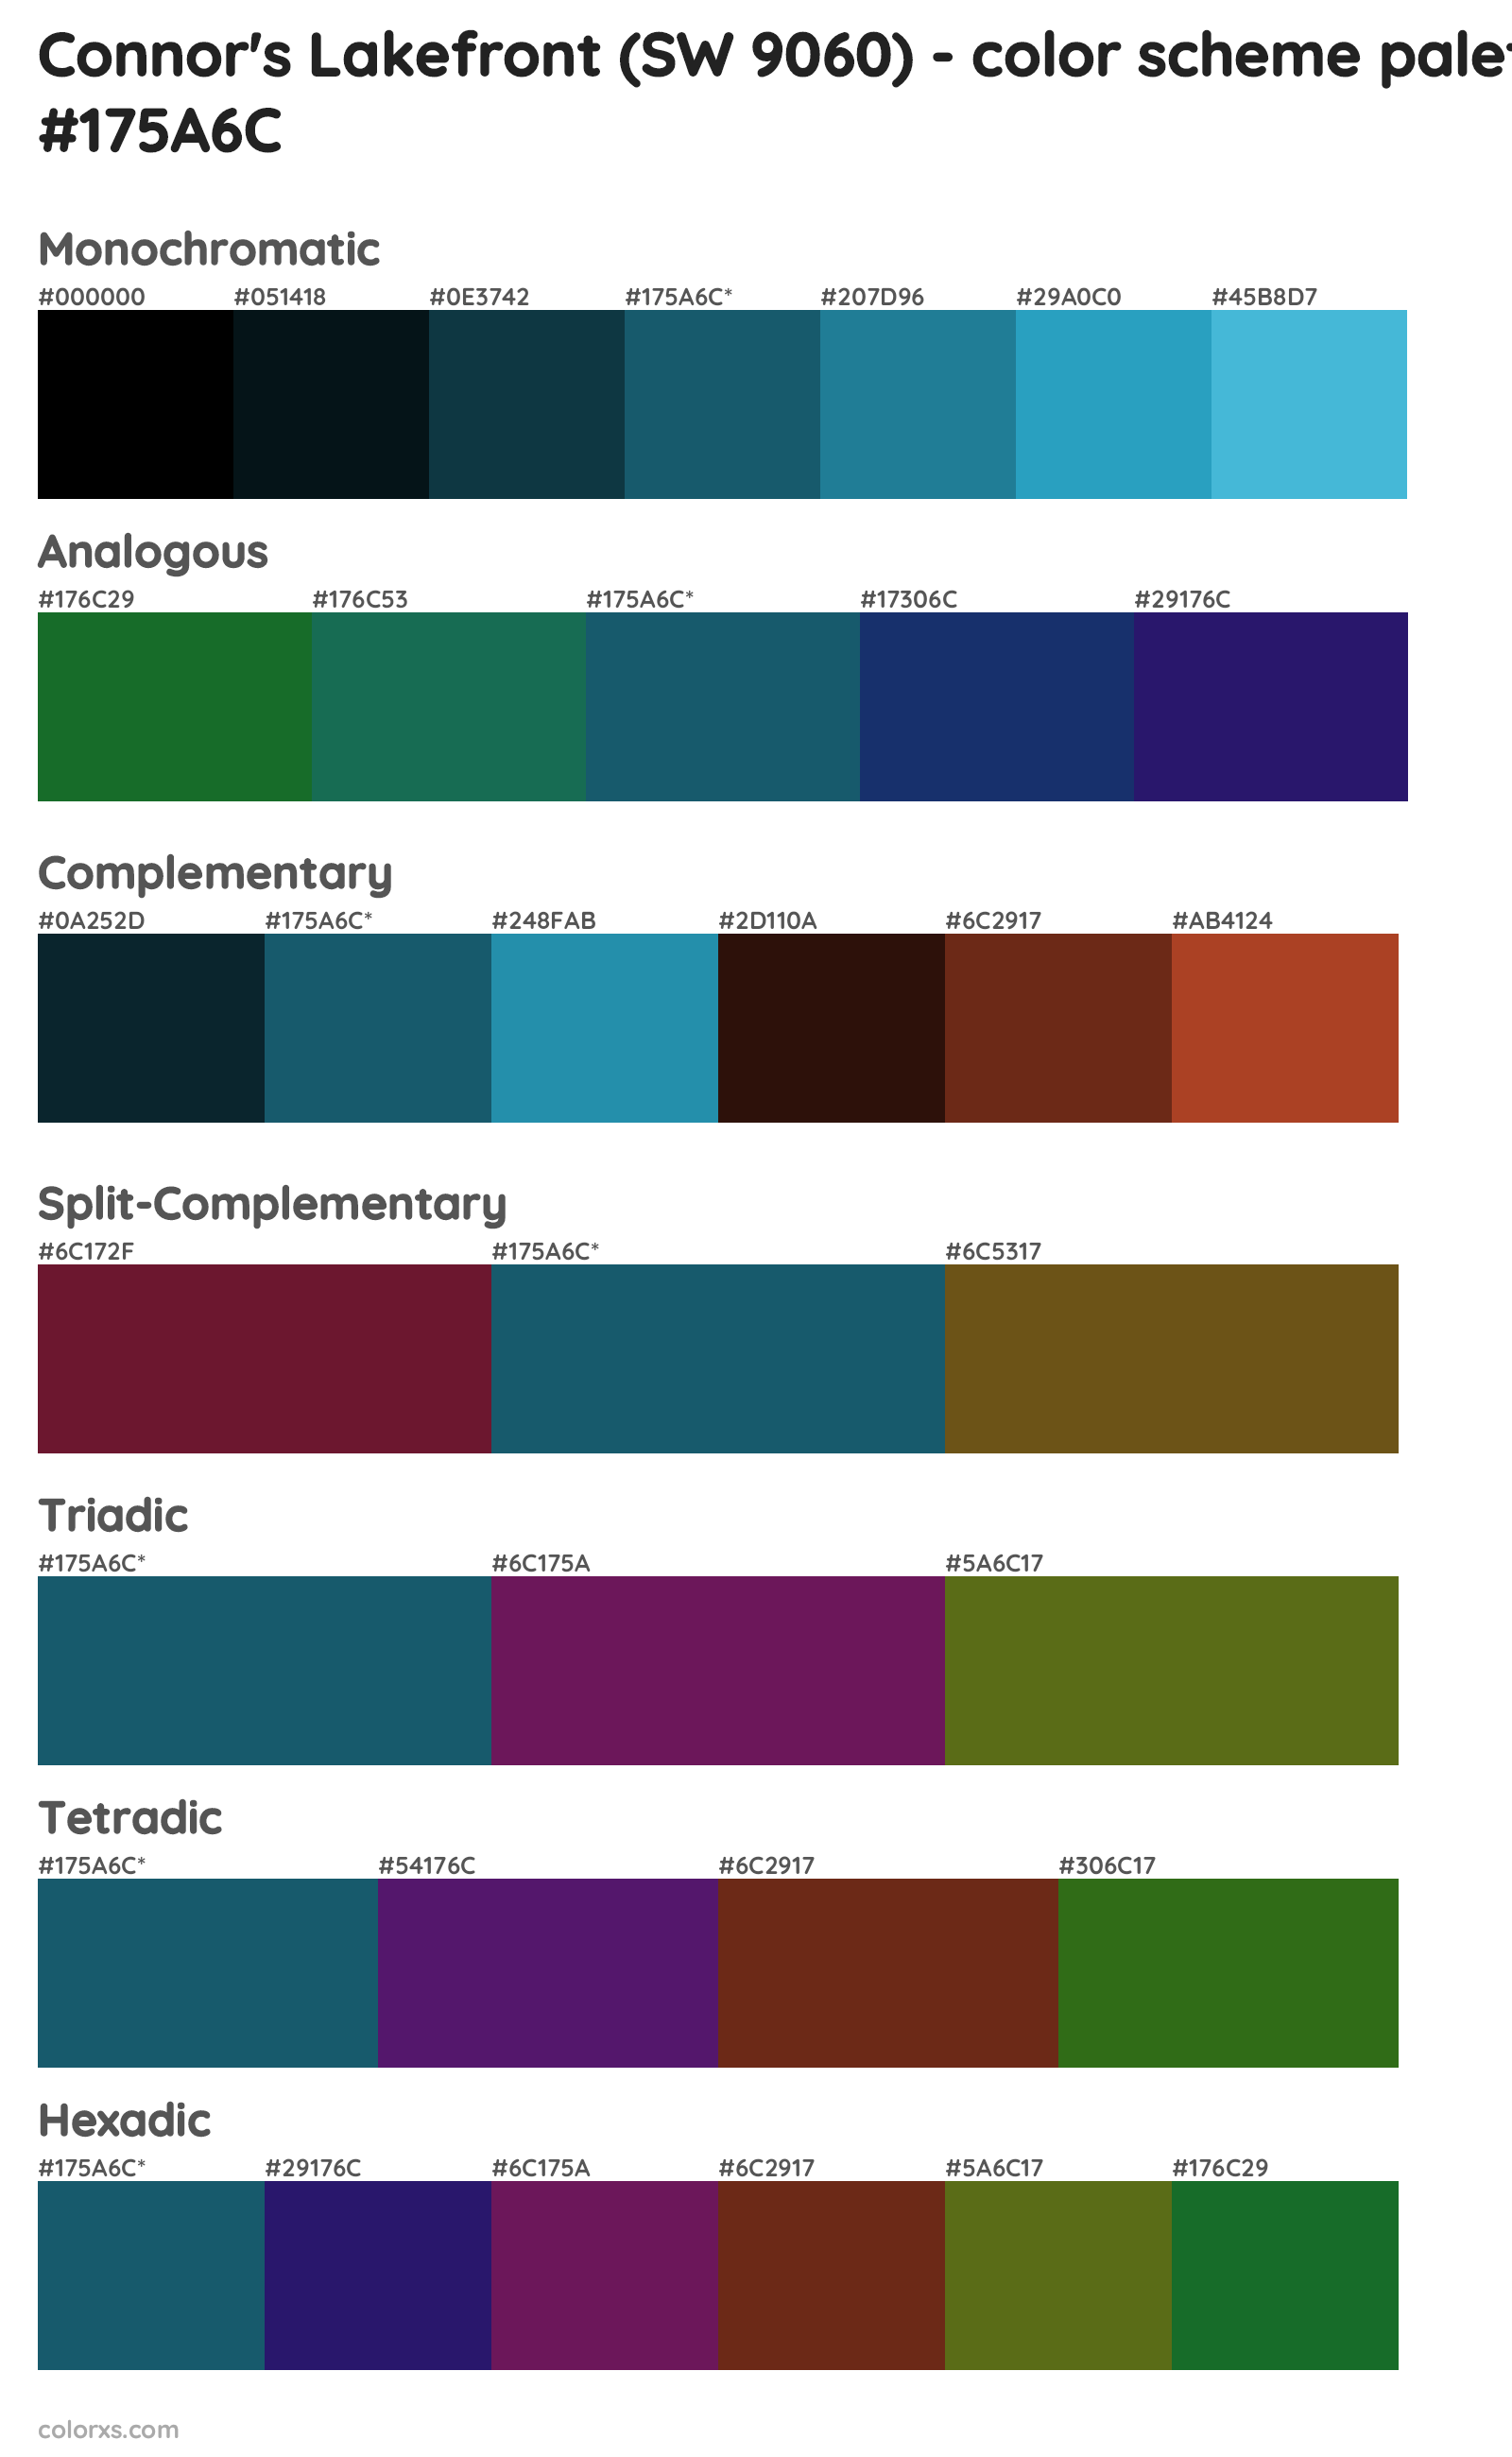 Connor's Lakefront (SW 9060) Color Scheme Palettes